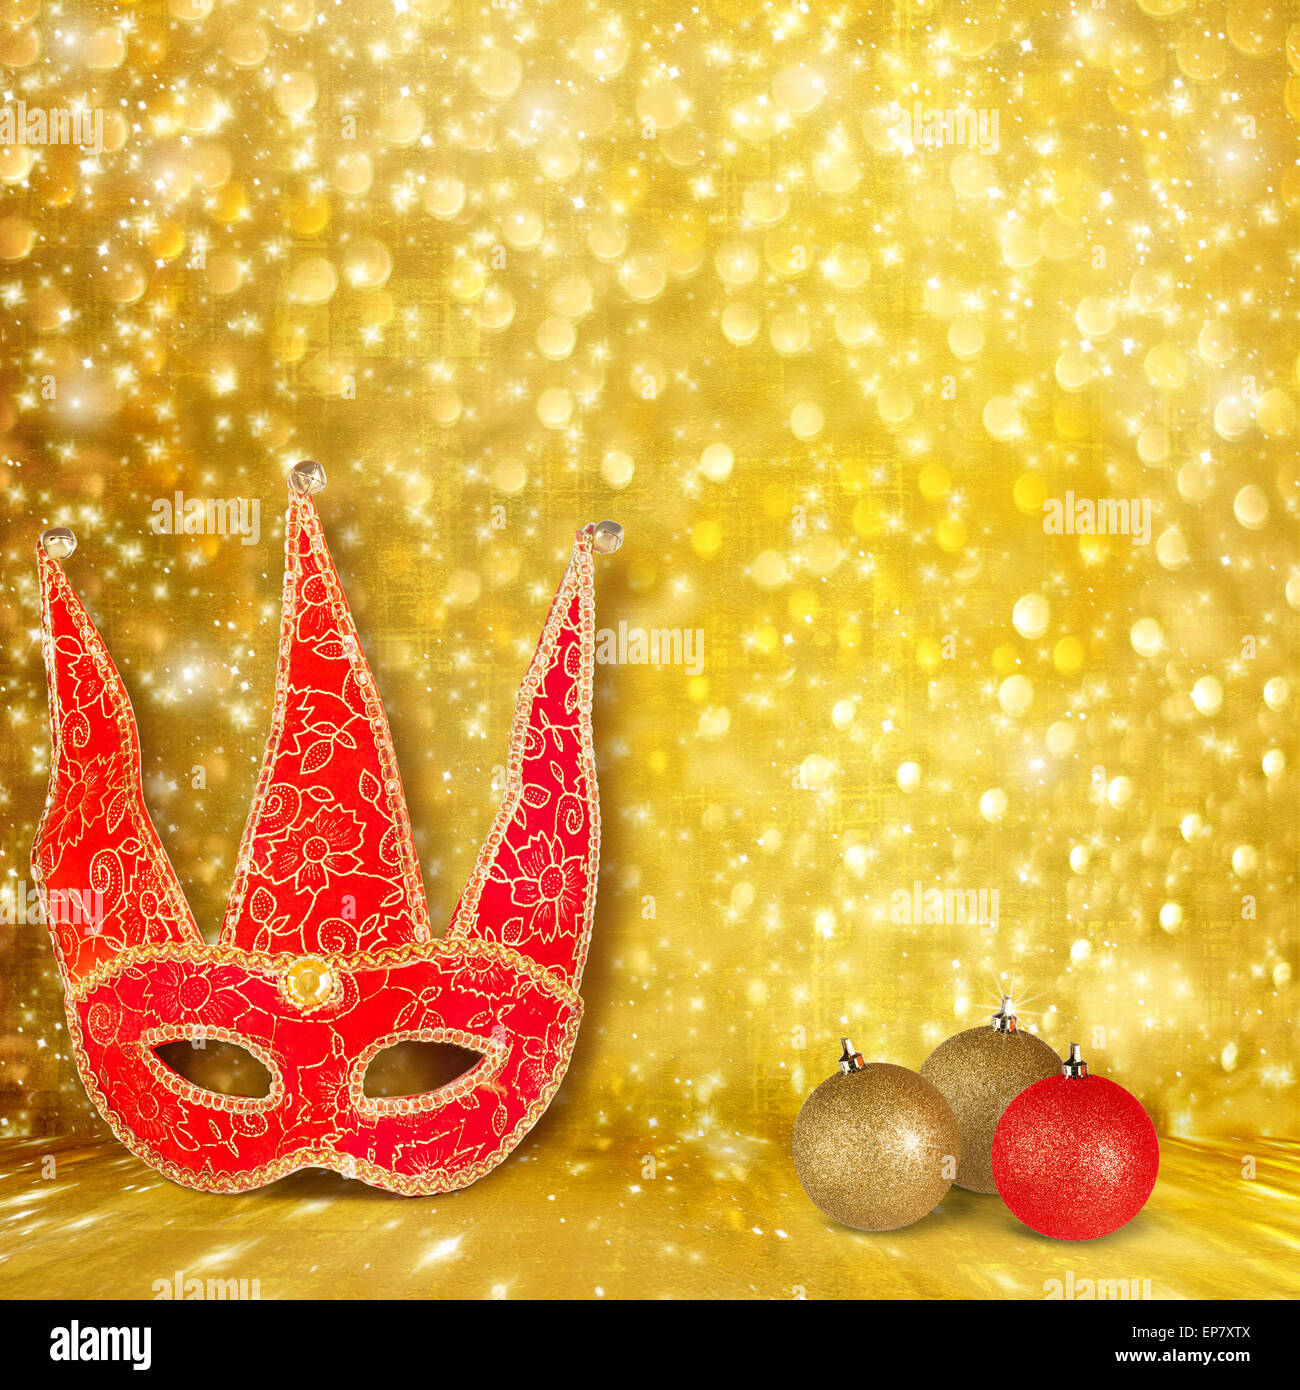 Masque de carnaval et une boule de Noël rouge sur un fond doré avec effet bokeh Banque D'Images